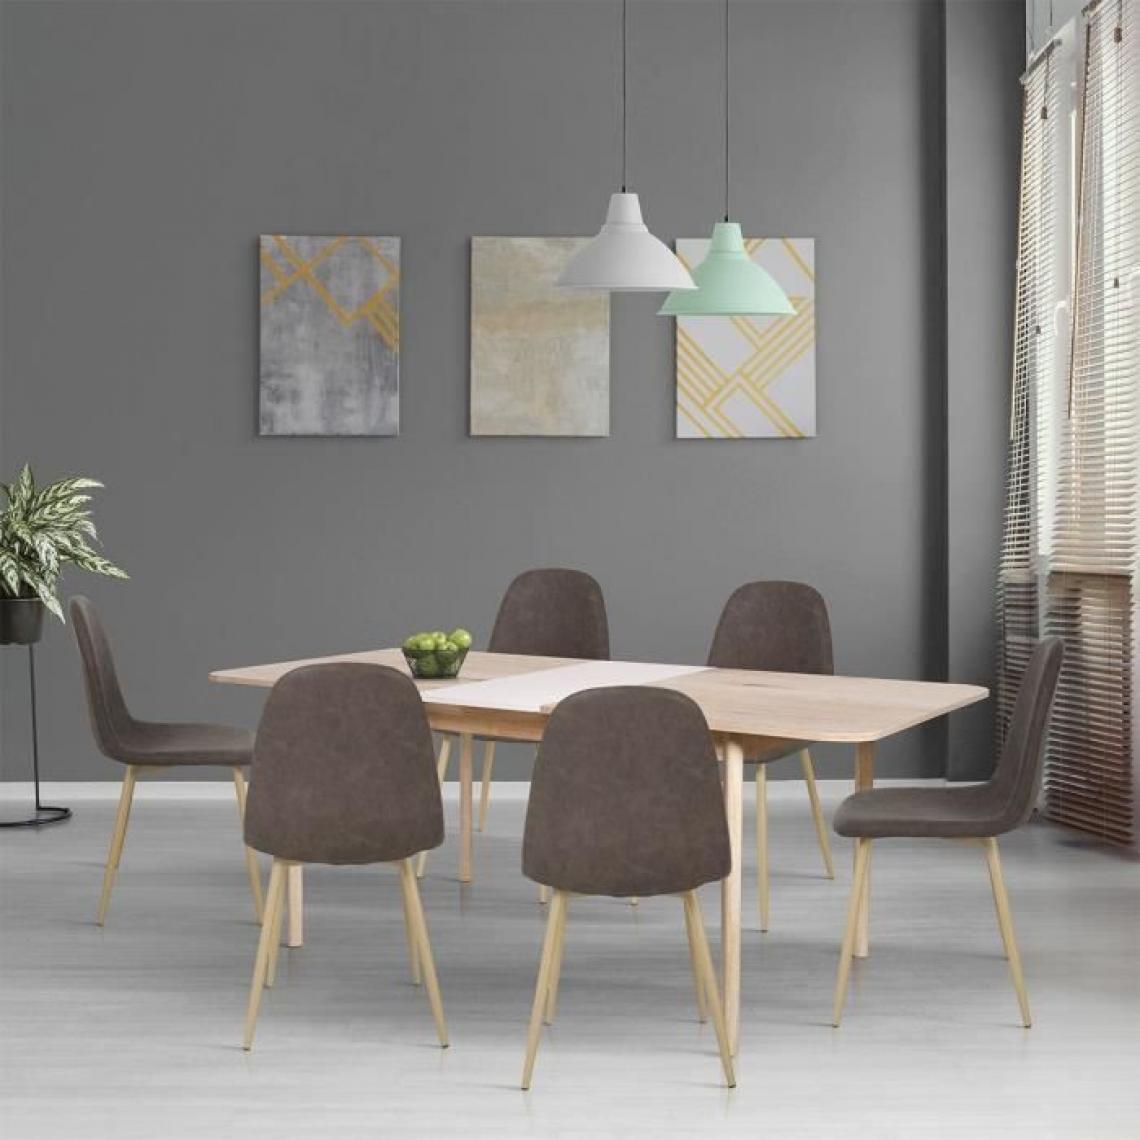 Cstore - Table à manger extensible - Scandinave - NEW SOFIA - Chêne et blanc avec motifs - L 160 / 200 x P 90 cm - Tables à manger